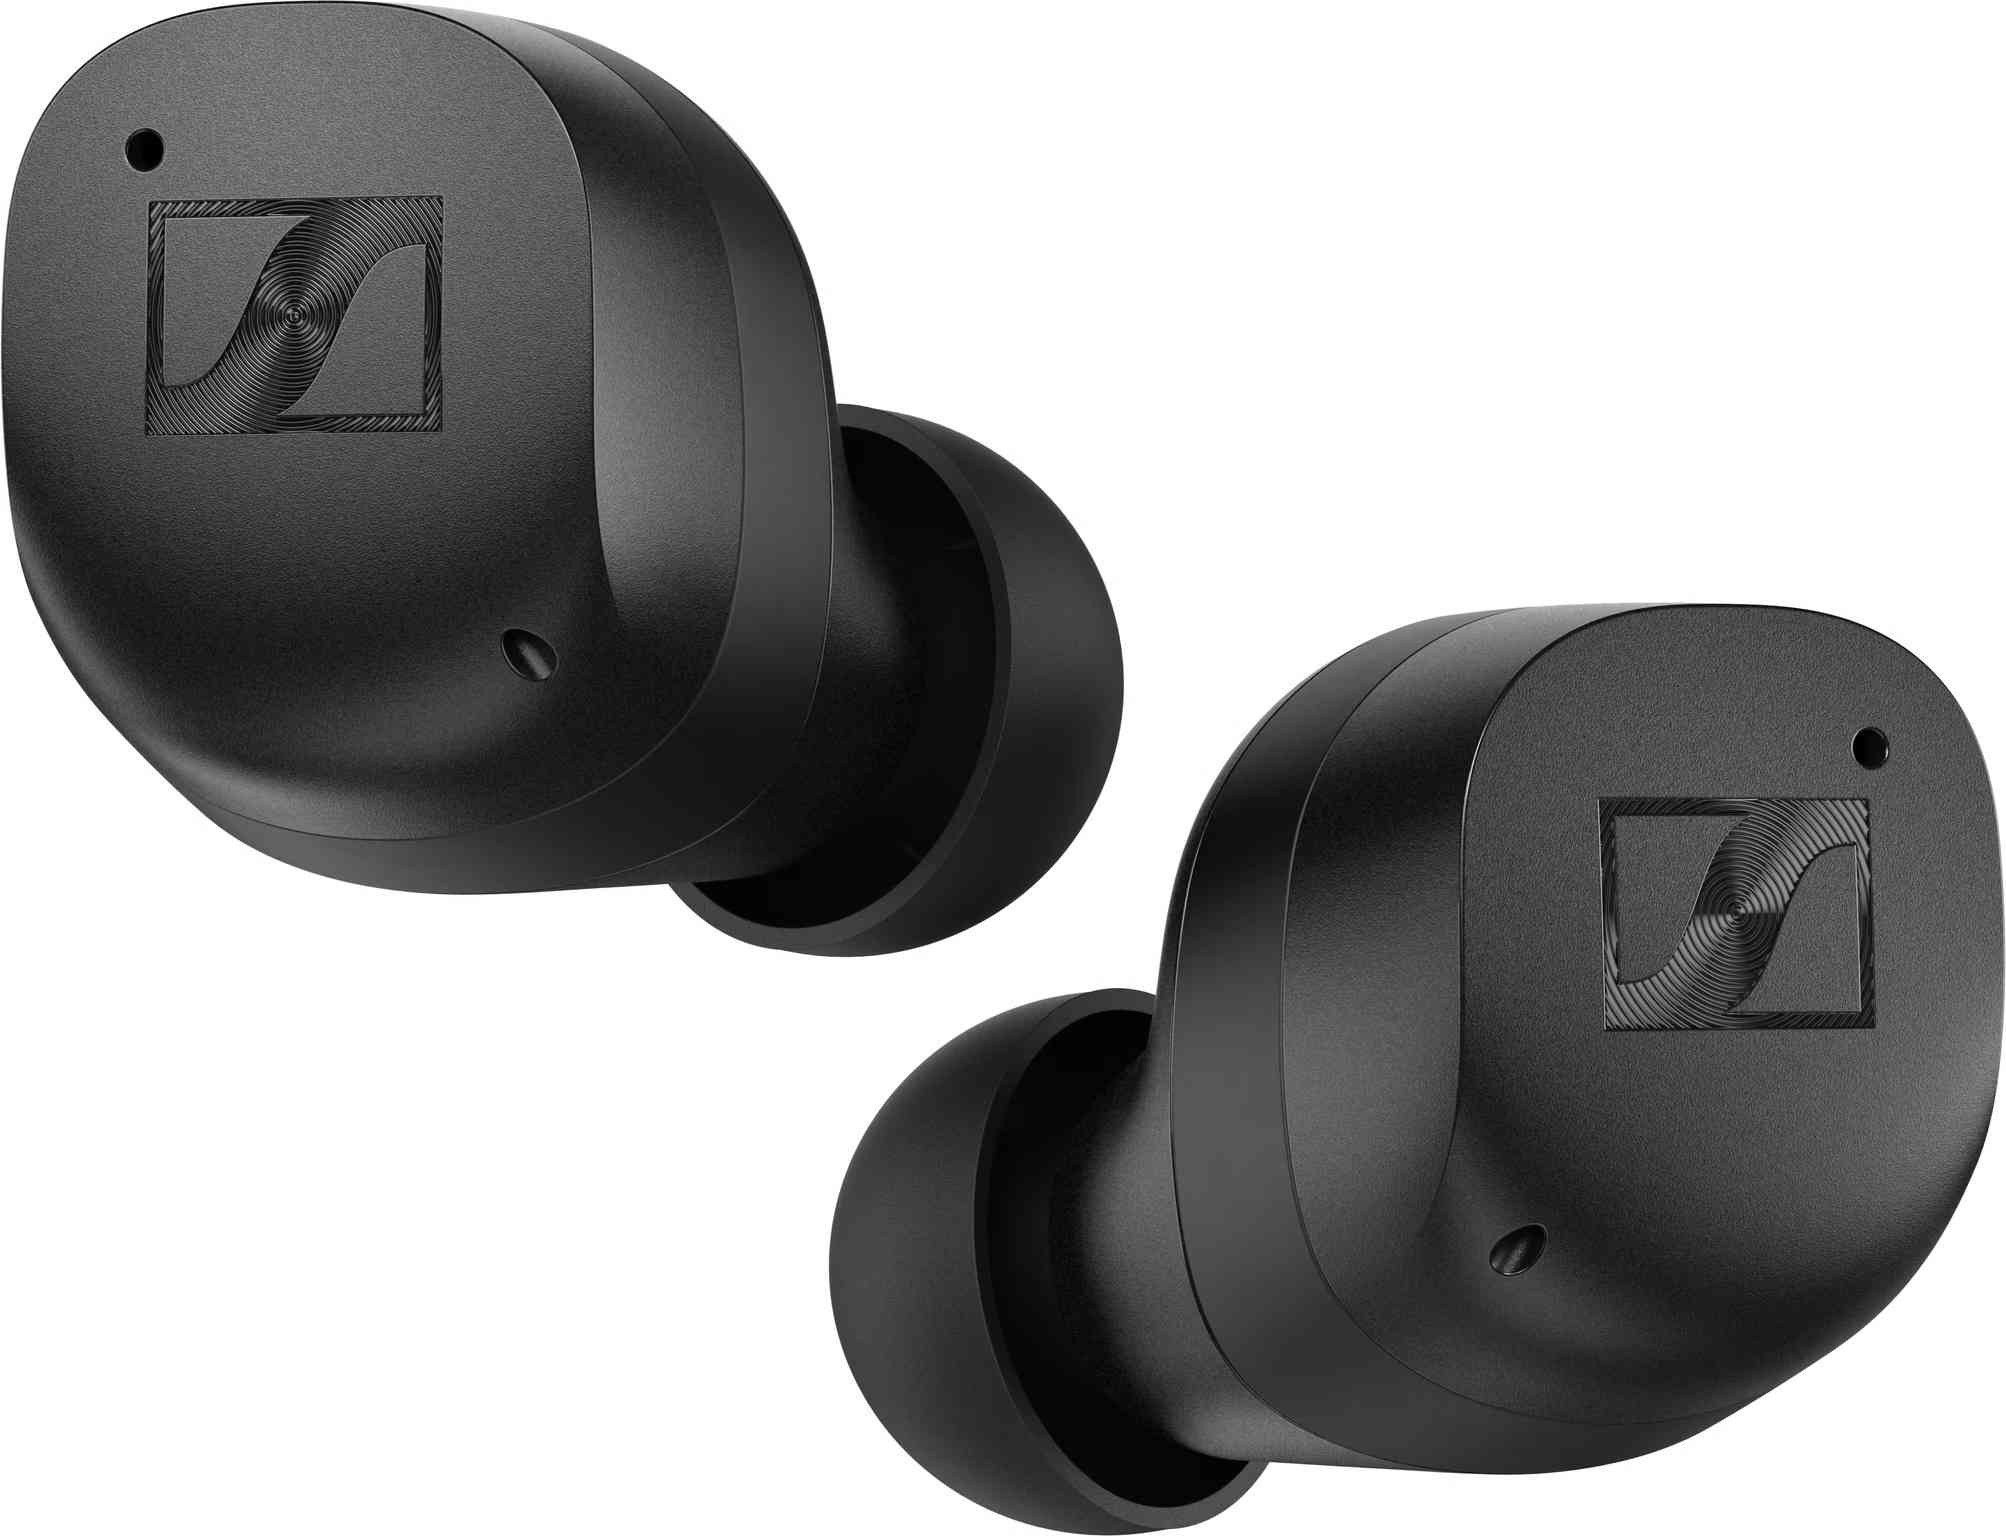 Sennheiser Momentum True Wireless 3 zwart - In ear oordopjes